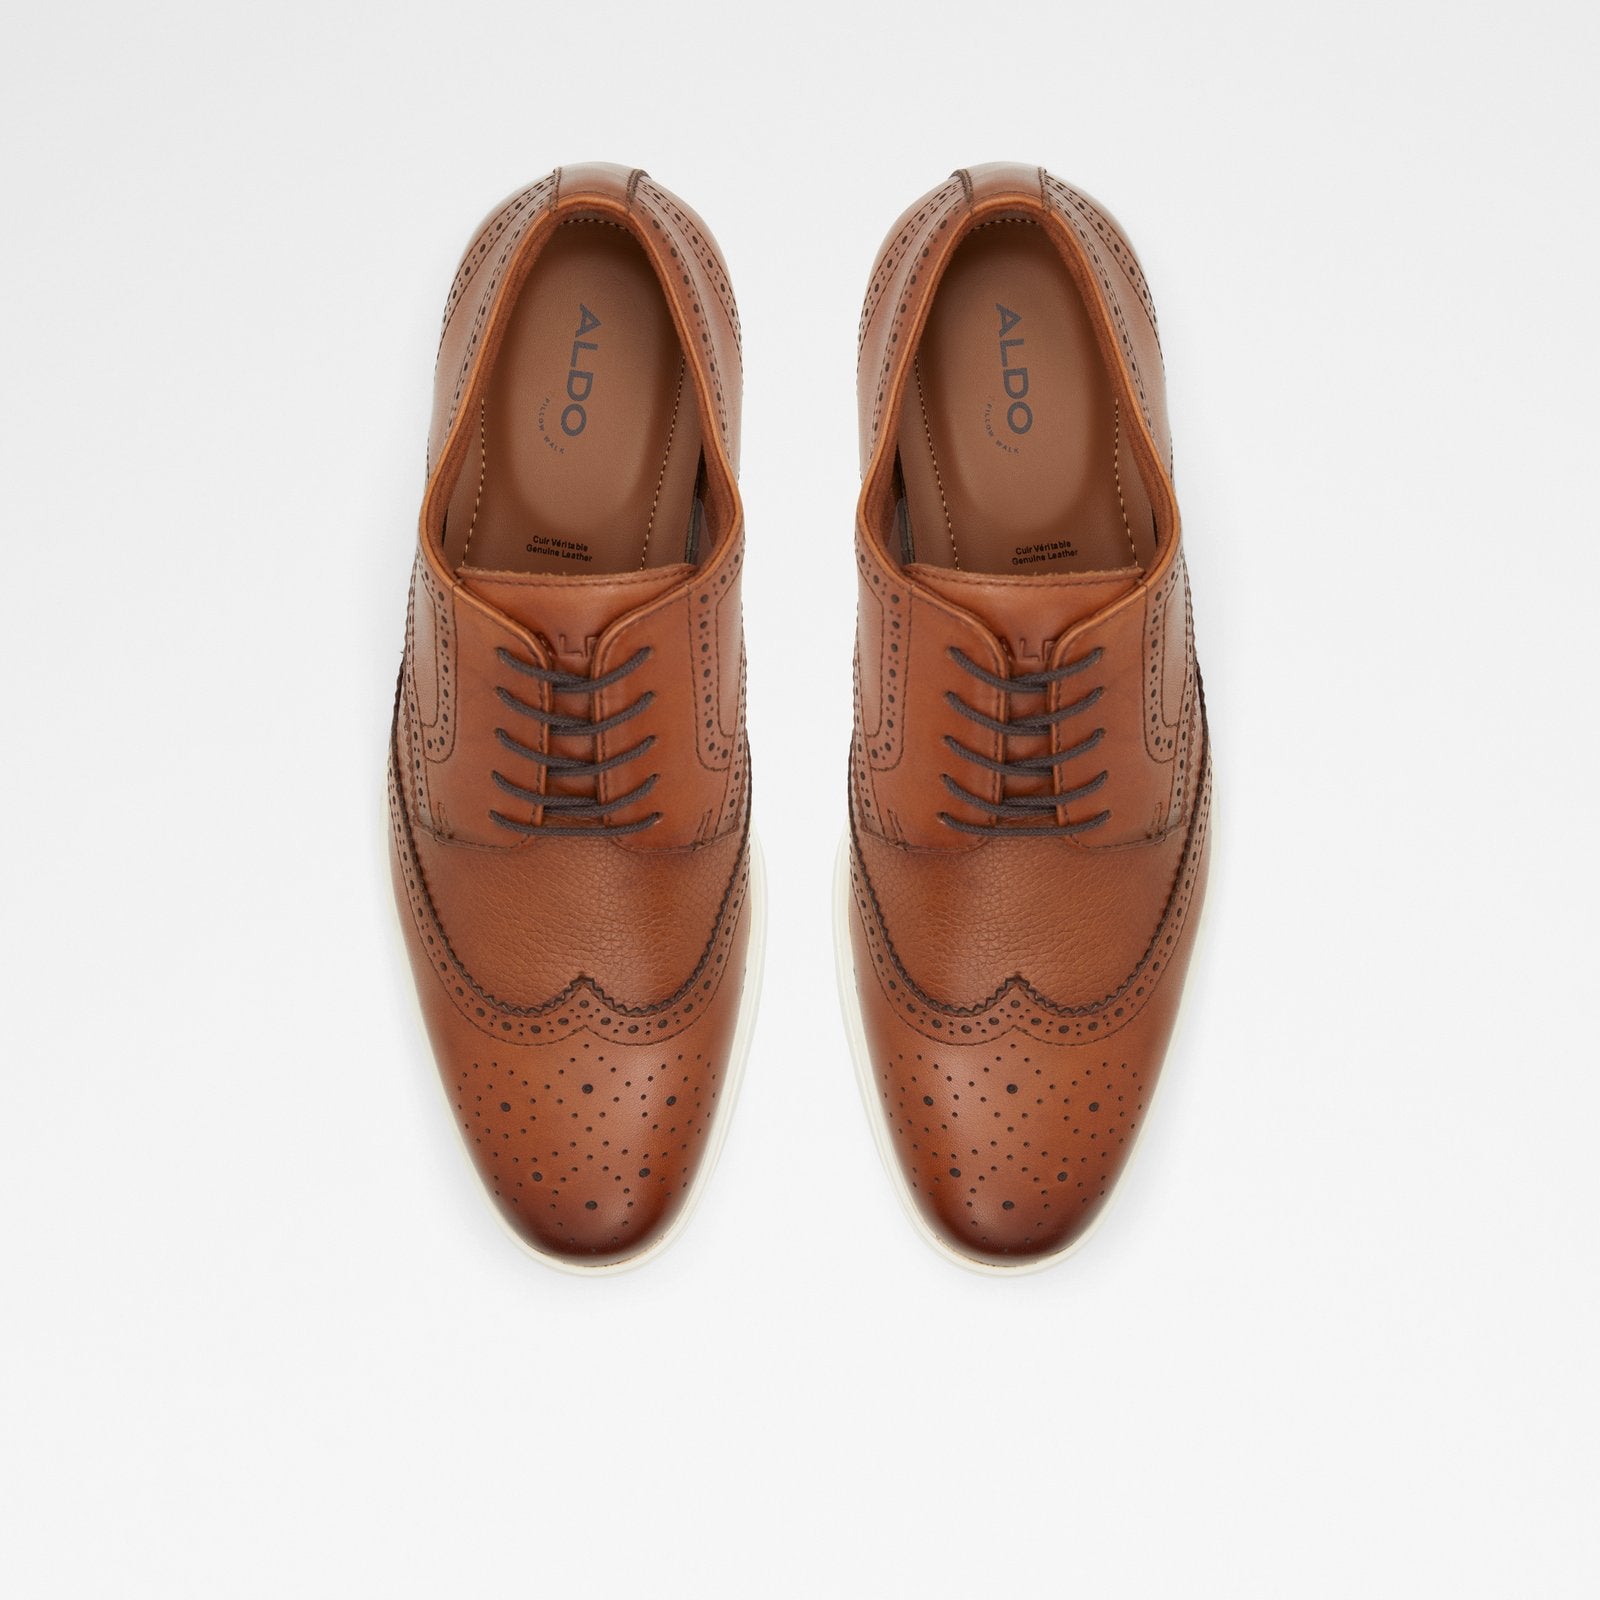 Wiser / Dress Shoes Men Shoes - Cognac - ALDO KSA